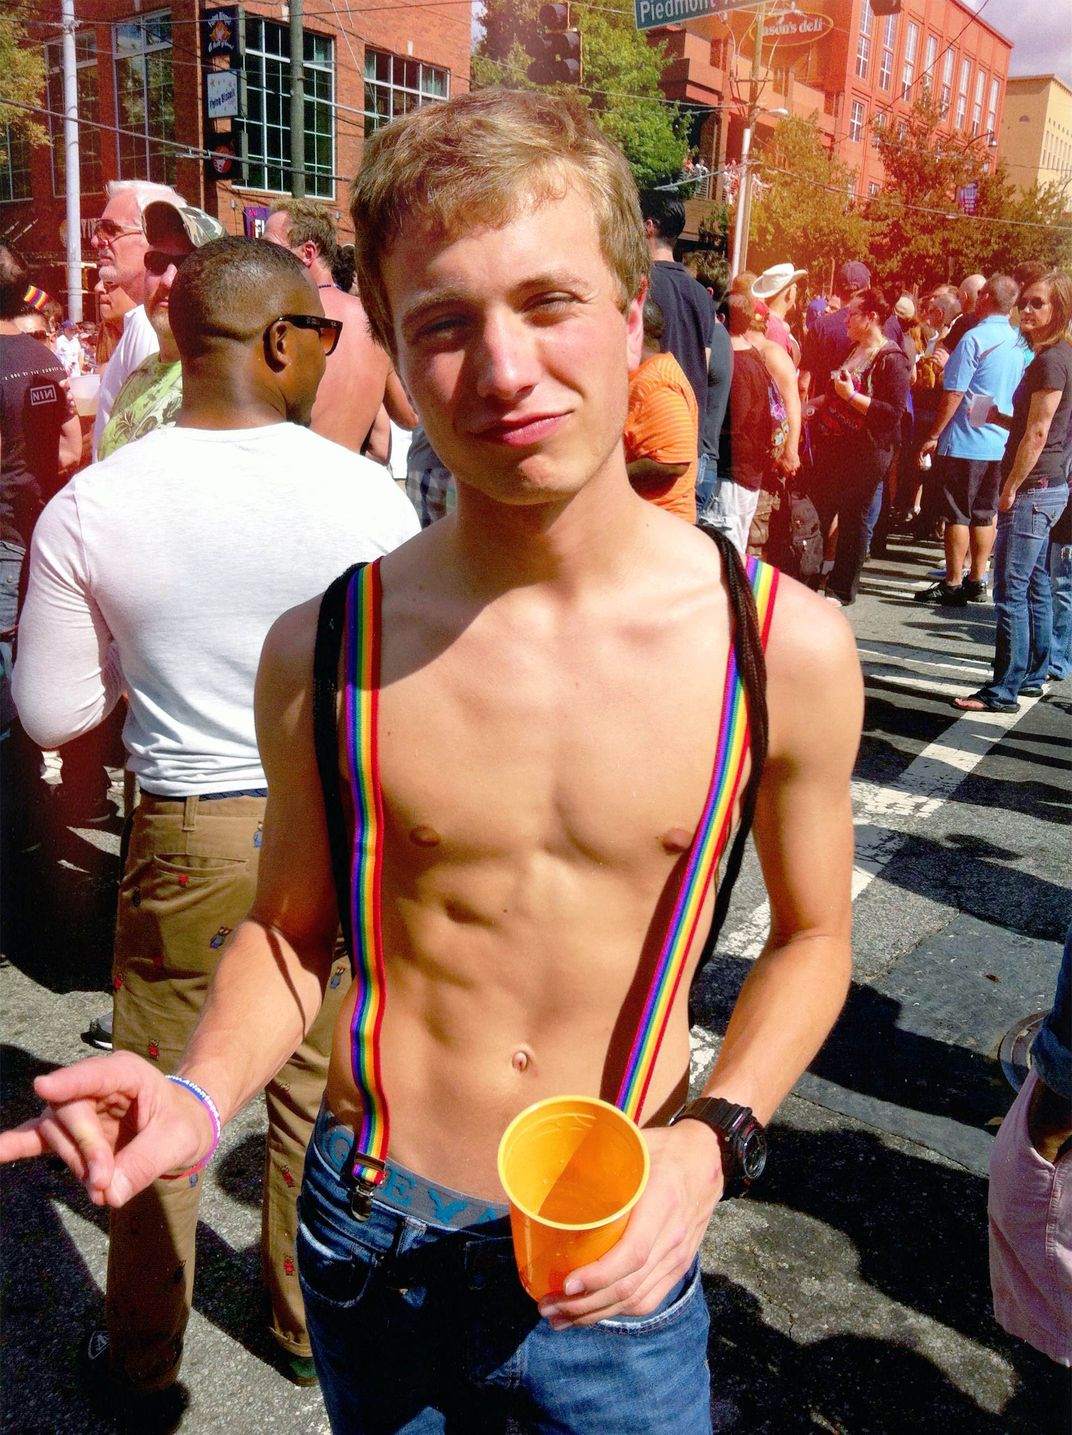 when is the gay pride parade in atlanta 2012